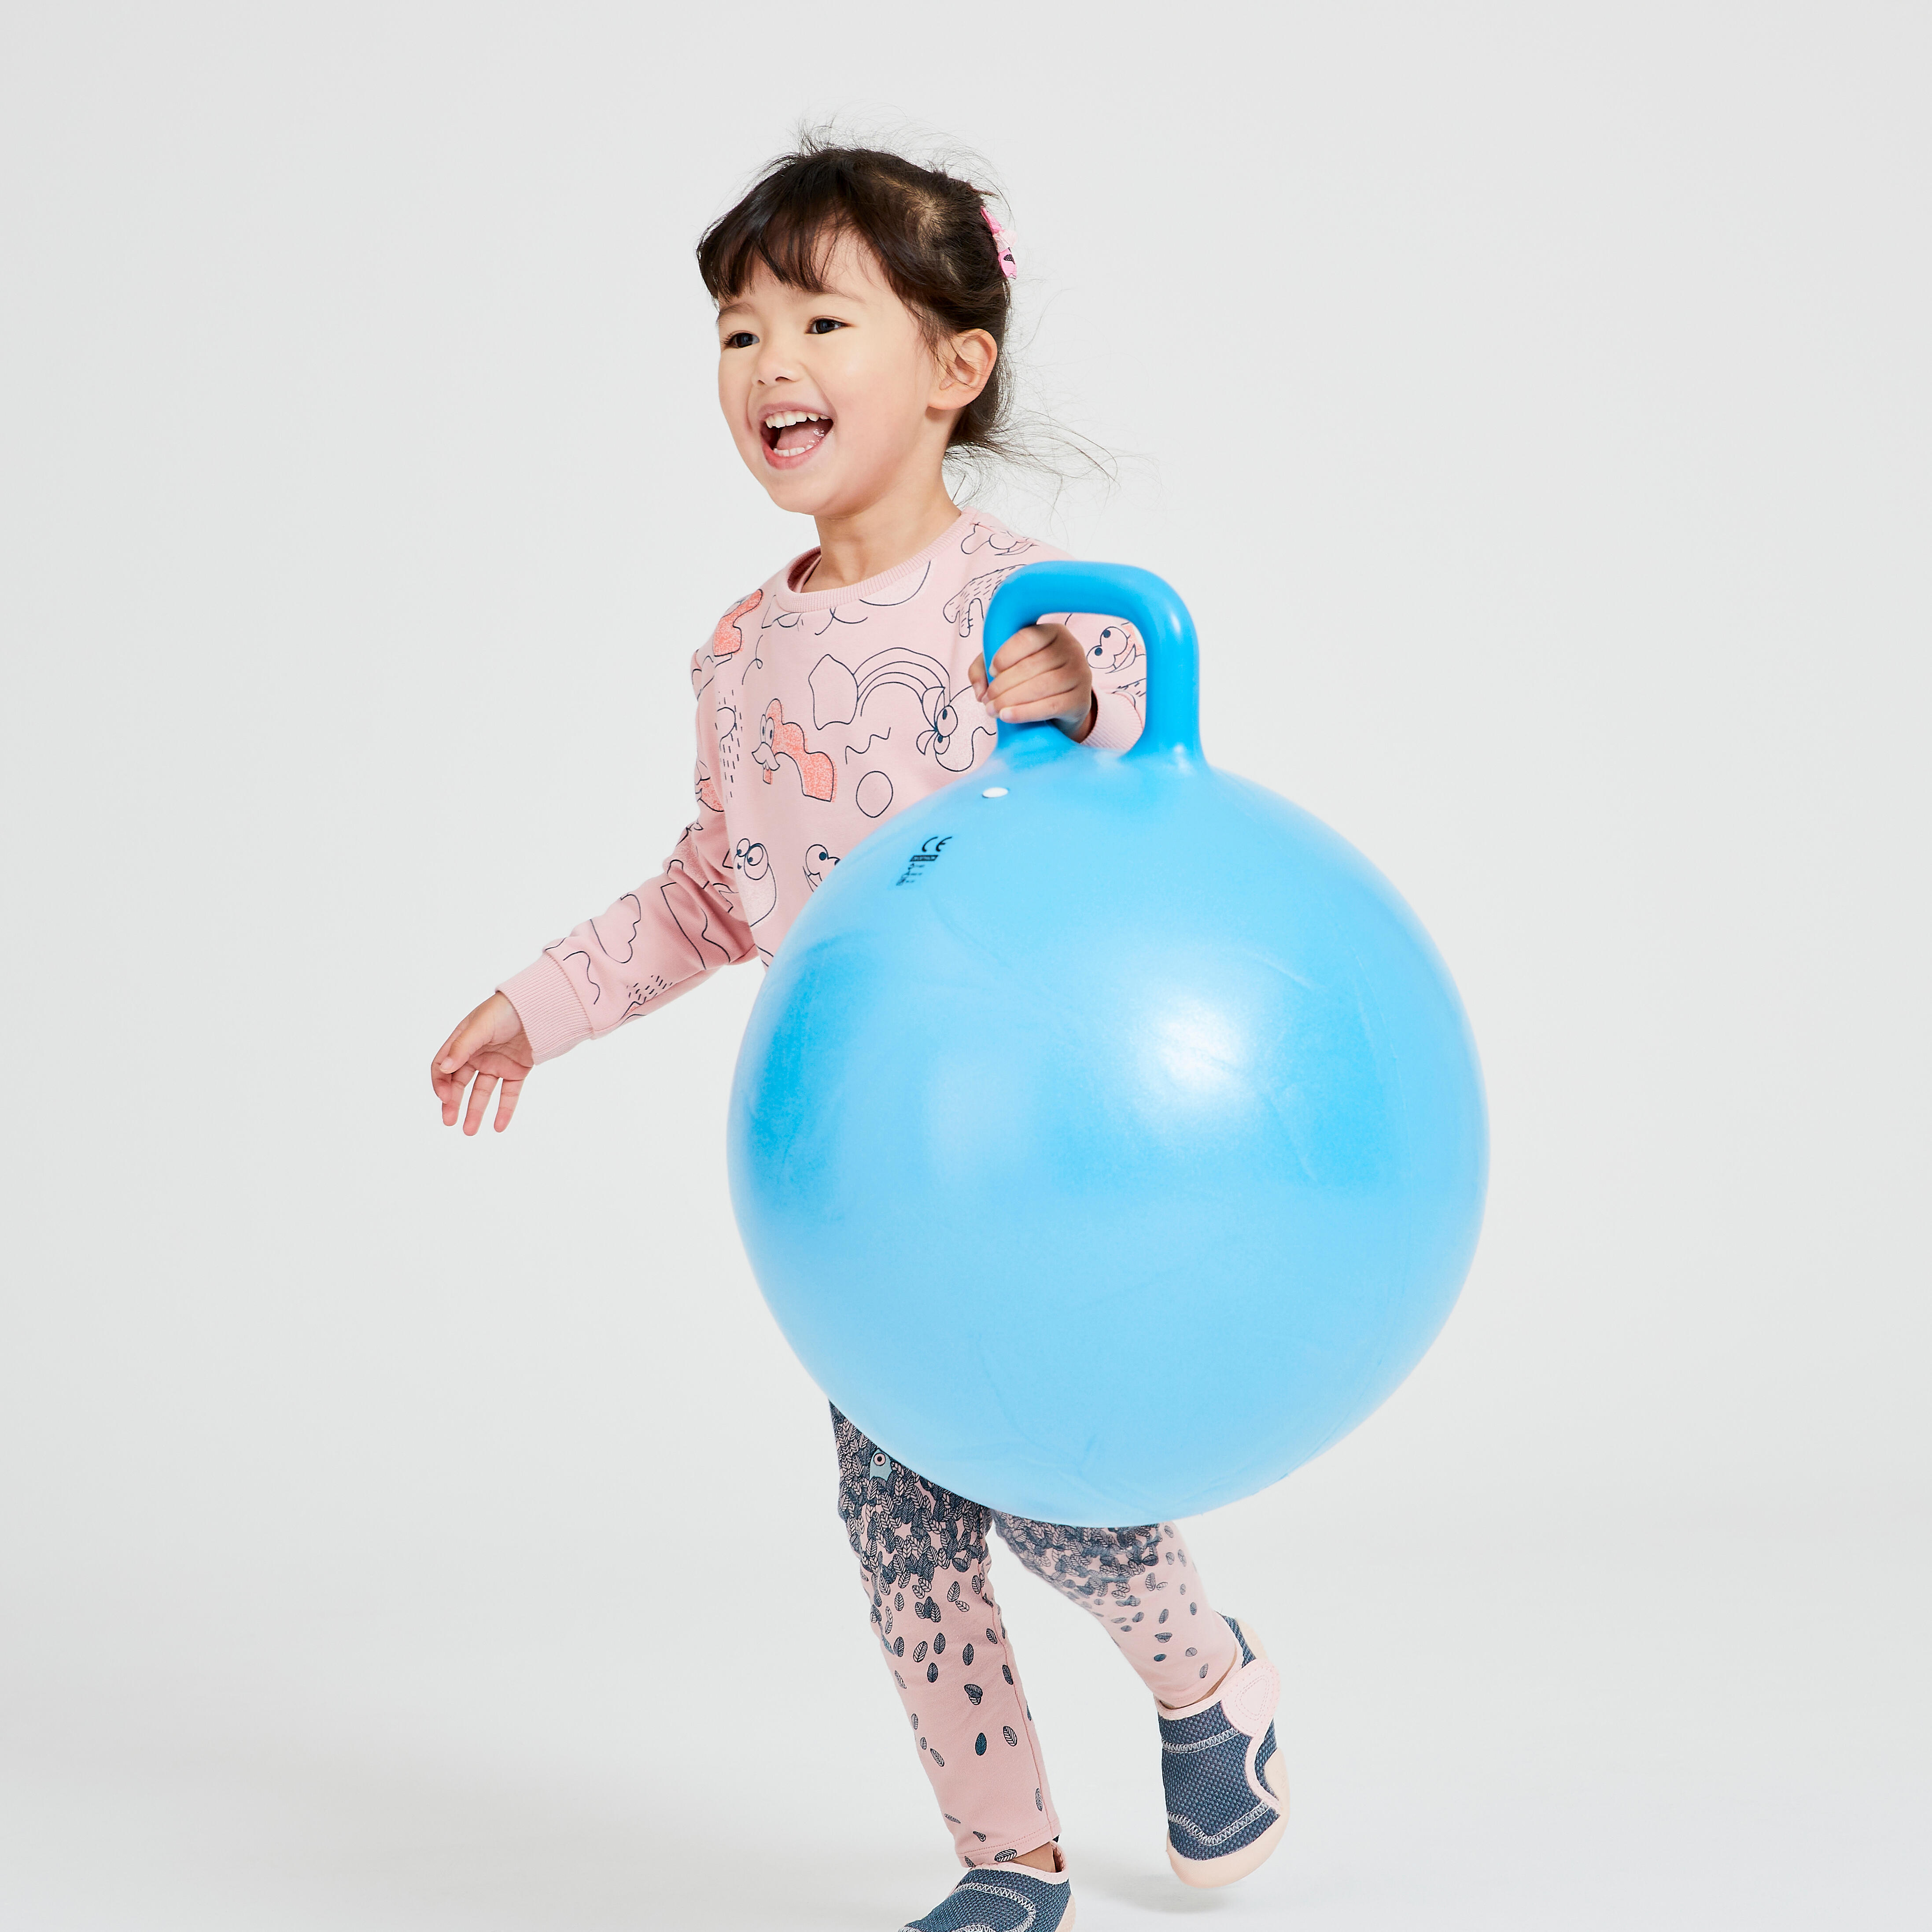 Ballon sauteur enfant Equi-Kids - Écurie